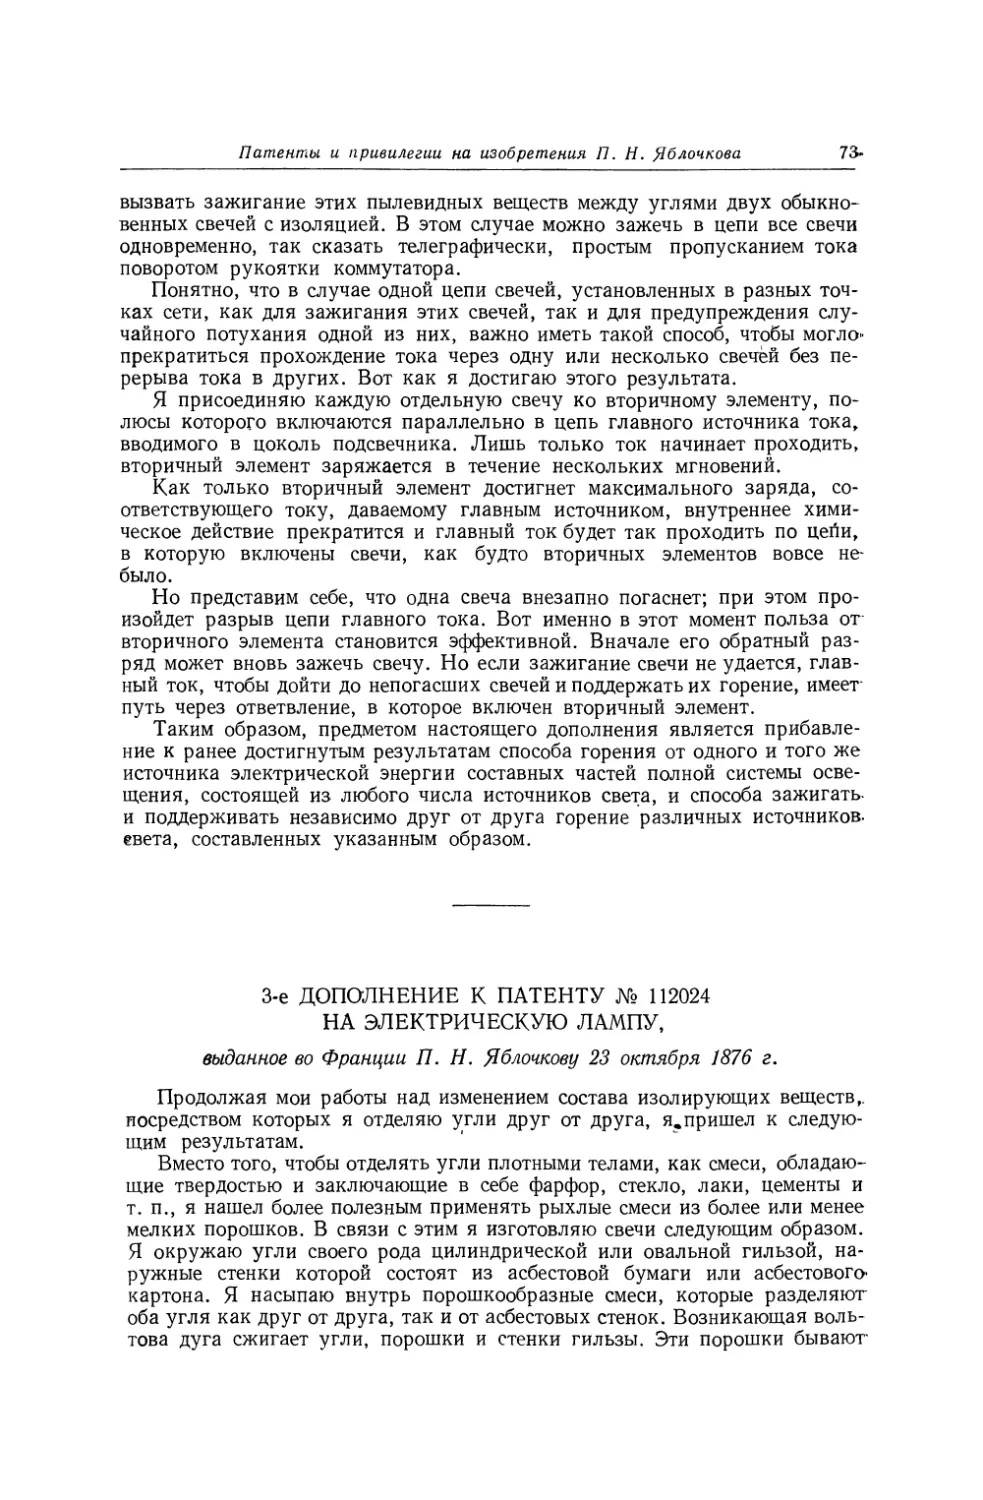 3-е дополнение к патенту № 112024 на электрическую лампу, выданное во Франции П. Н. Яблочкову 23 октября 1876 г